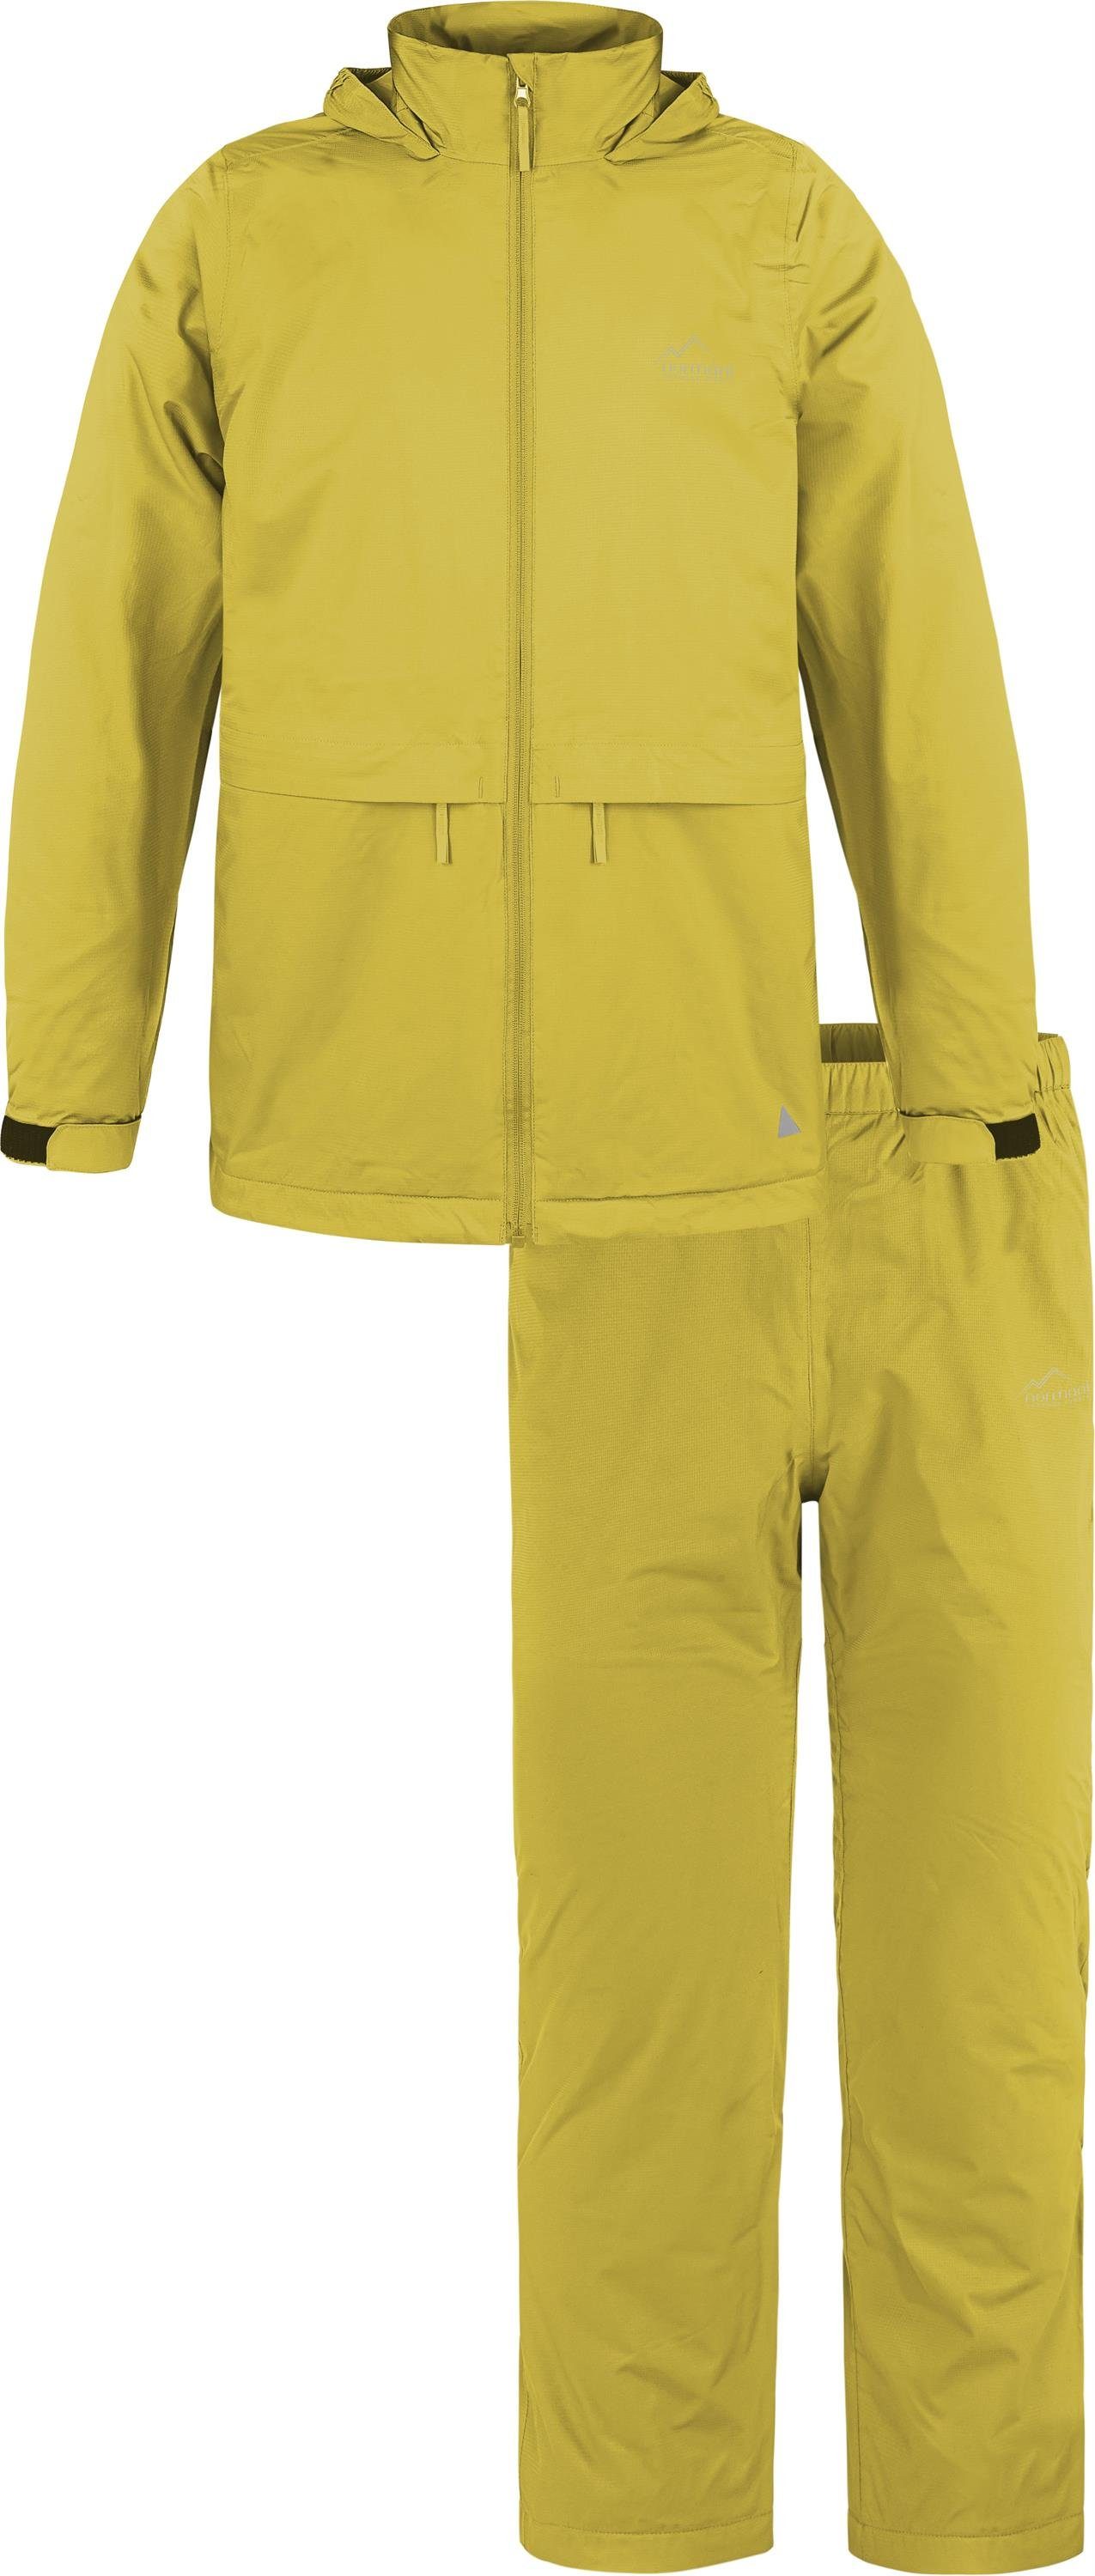 normani Regenjacke Kinder Sommer Regenjacke und Regenhose Wasserdichter Regenanzug Regen Overall für Junge und Mädchen Gelb